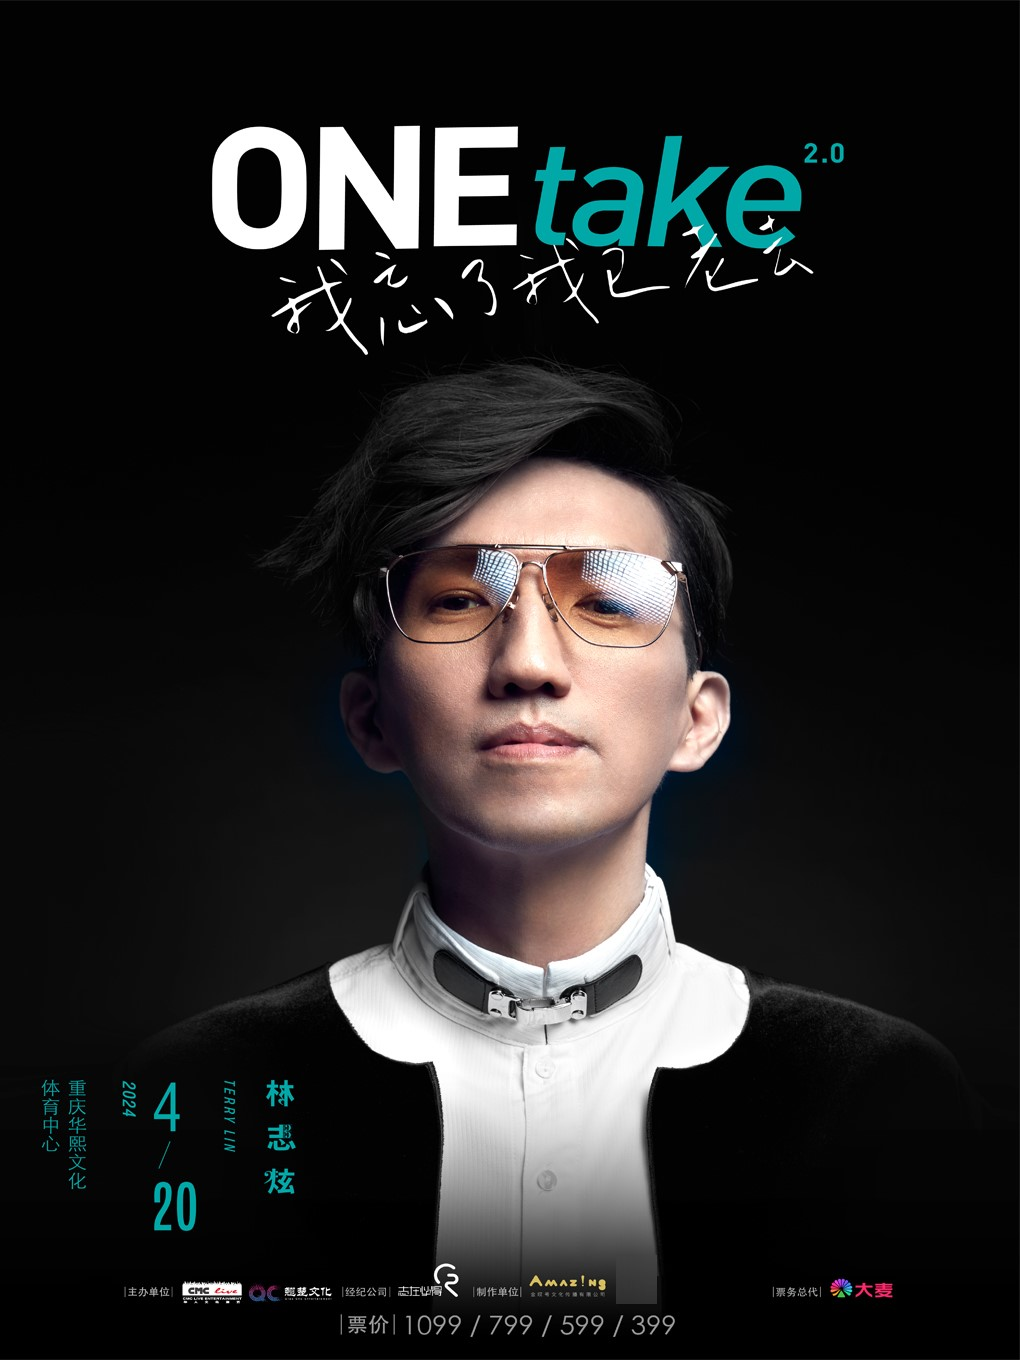 [重庆]林志炫ONEtake2.0《我忘了我已老去》巡回演唱会—重庆站